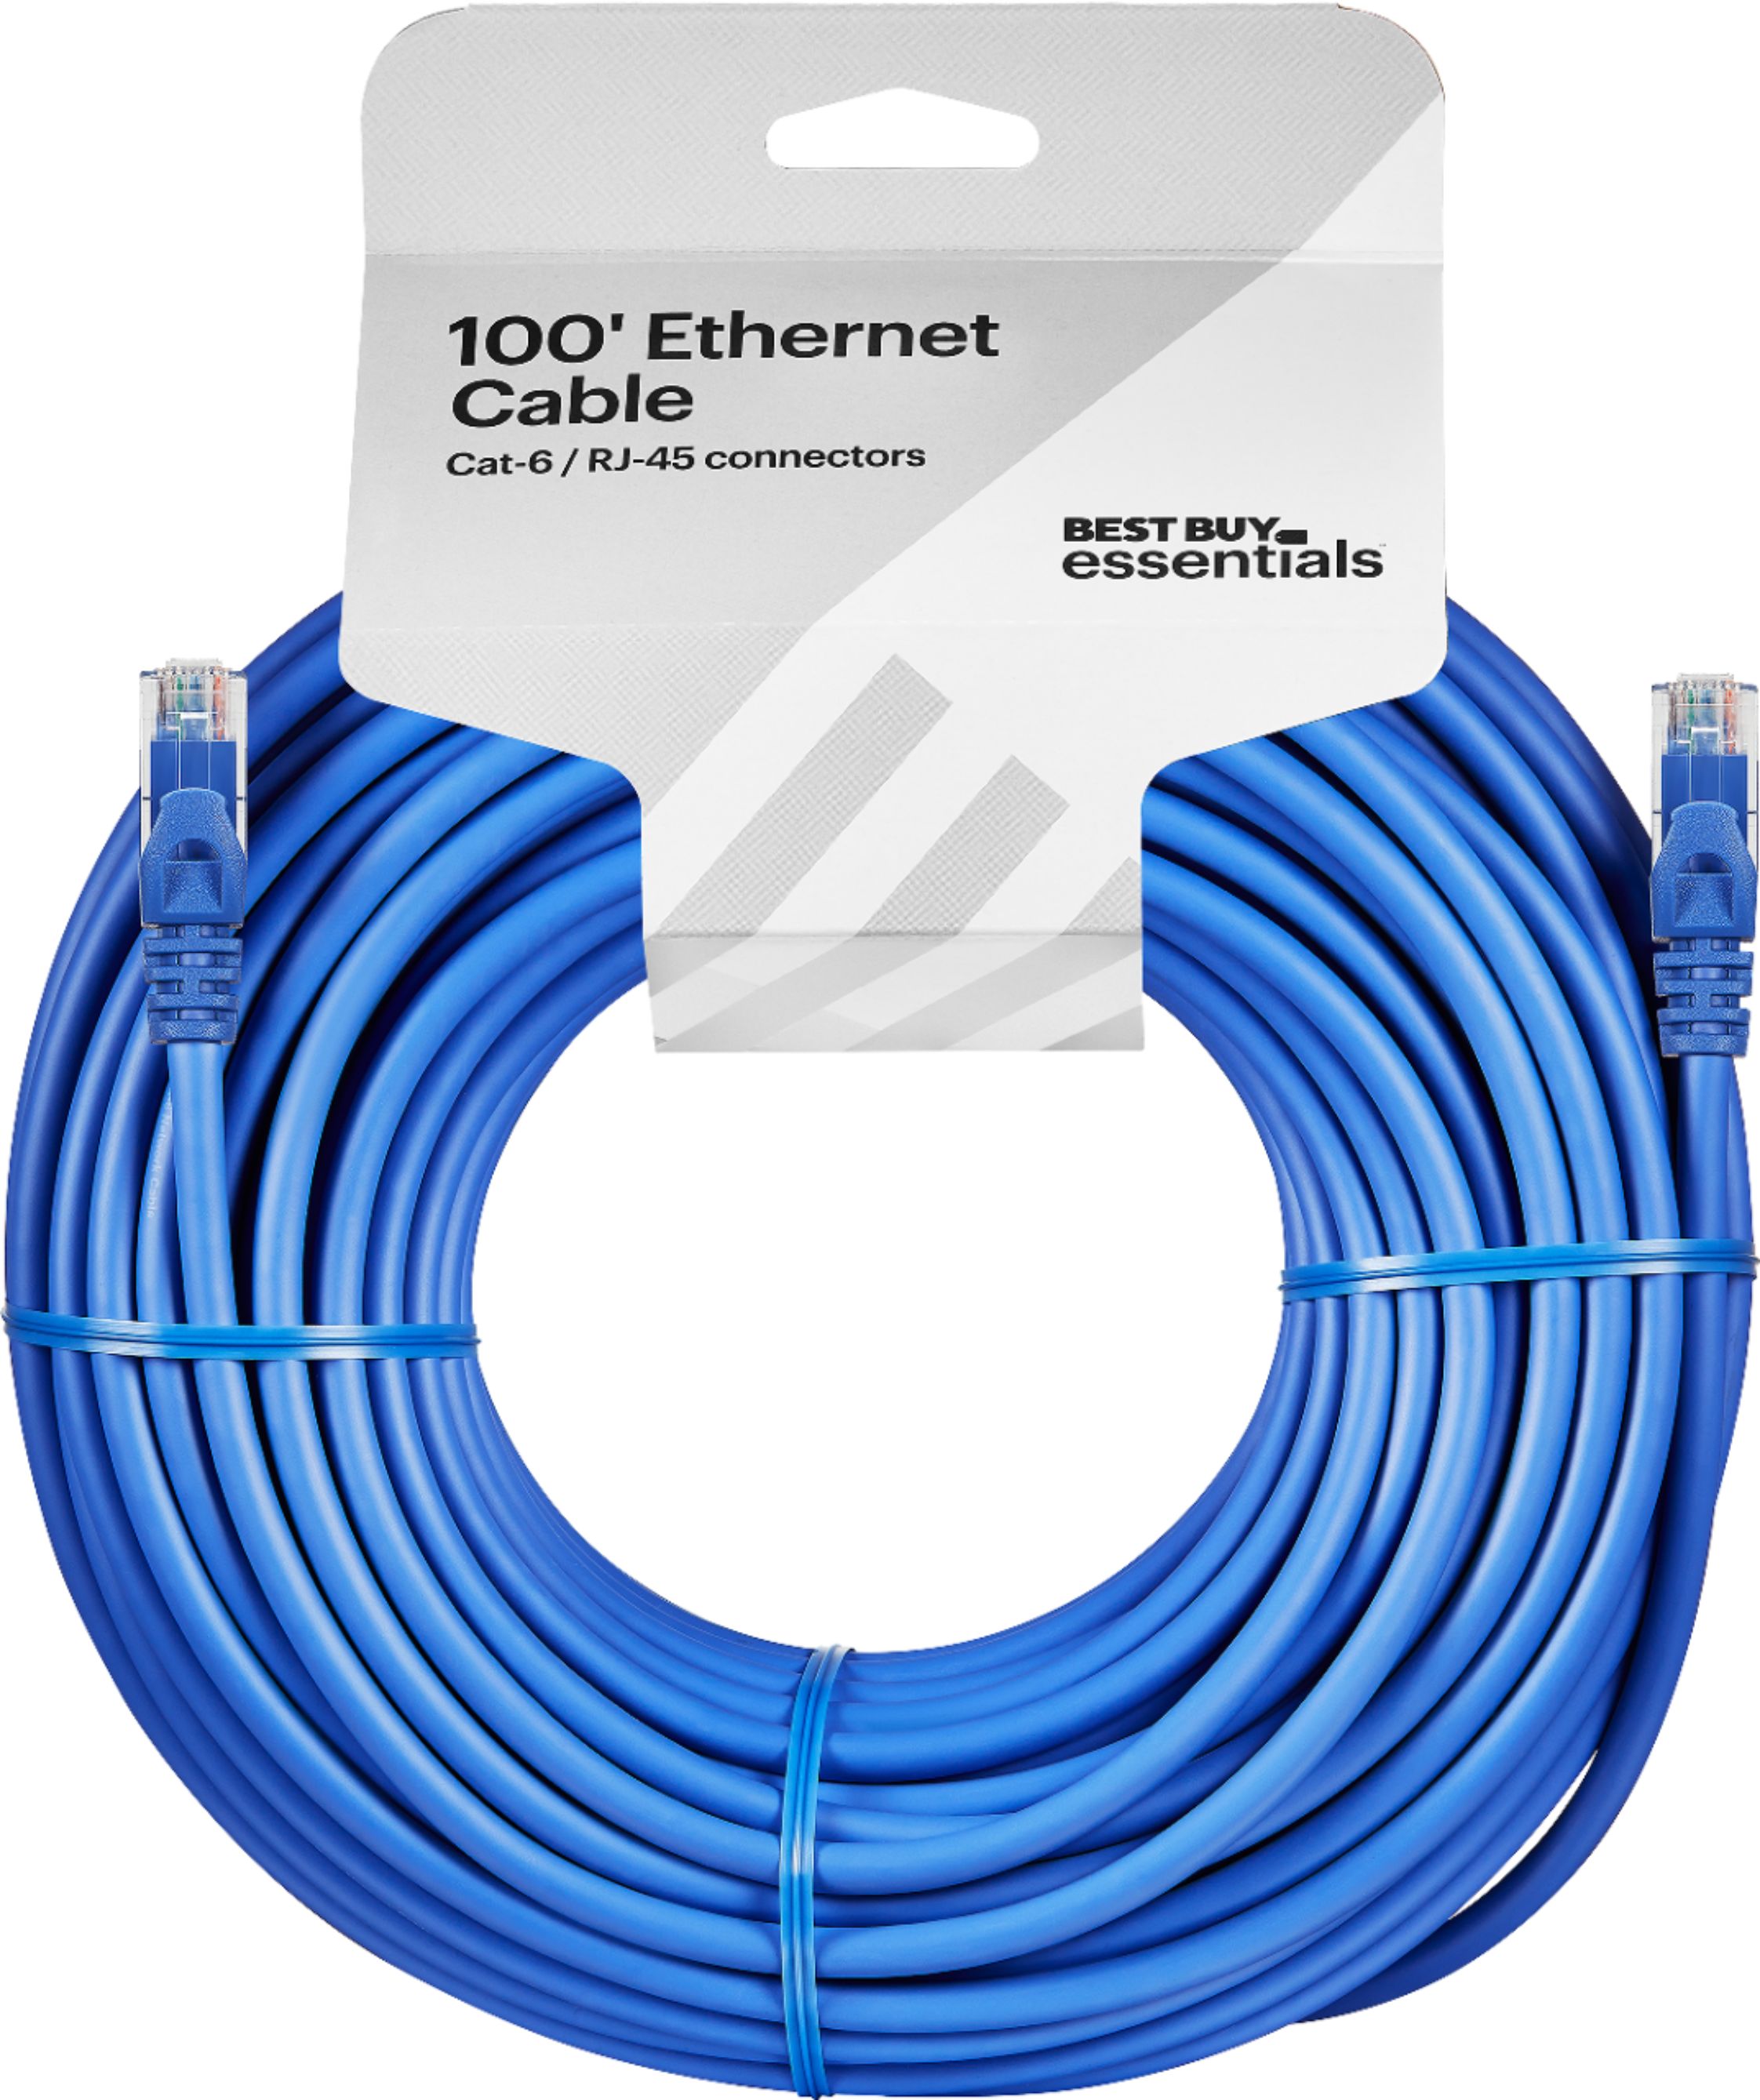 Best Buy essentials™ 100' Cat-6 Ethernet Cable Blue BE-PEC6ST100 - Best Buy